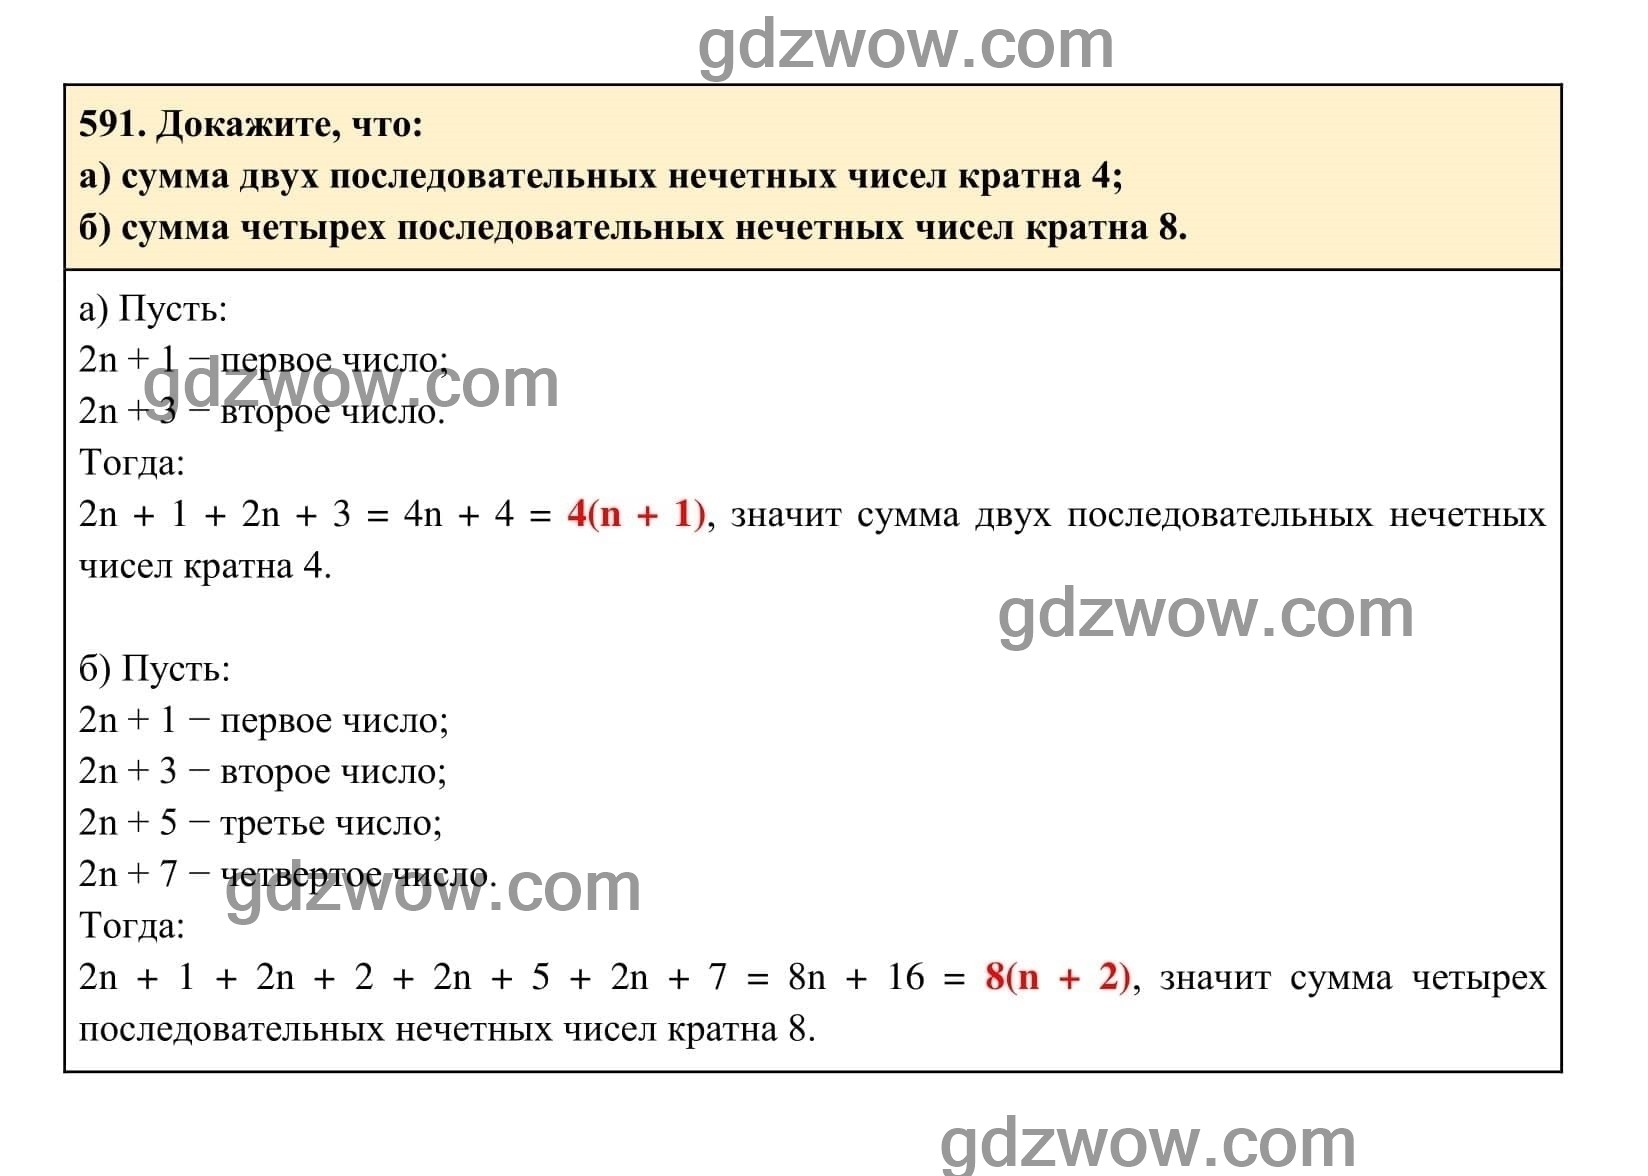 Упражнение 591 - ГДЗ по Алгебре 7 класс Учебник Макарычев (решебник) - GDZwow